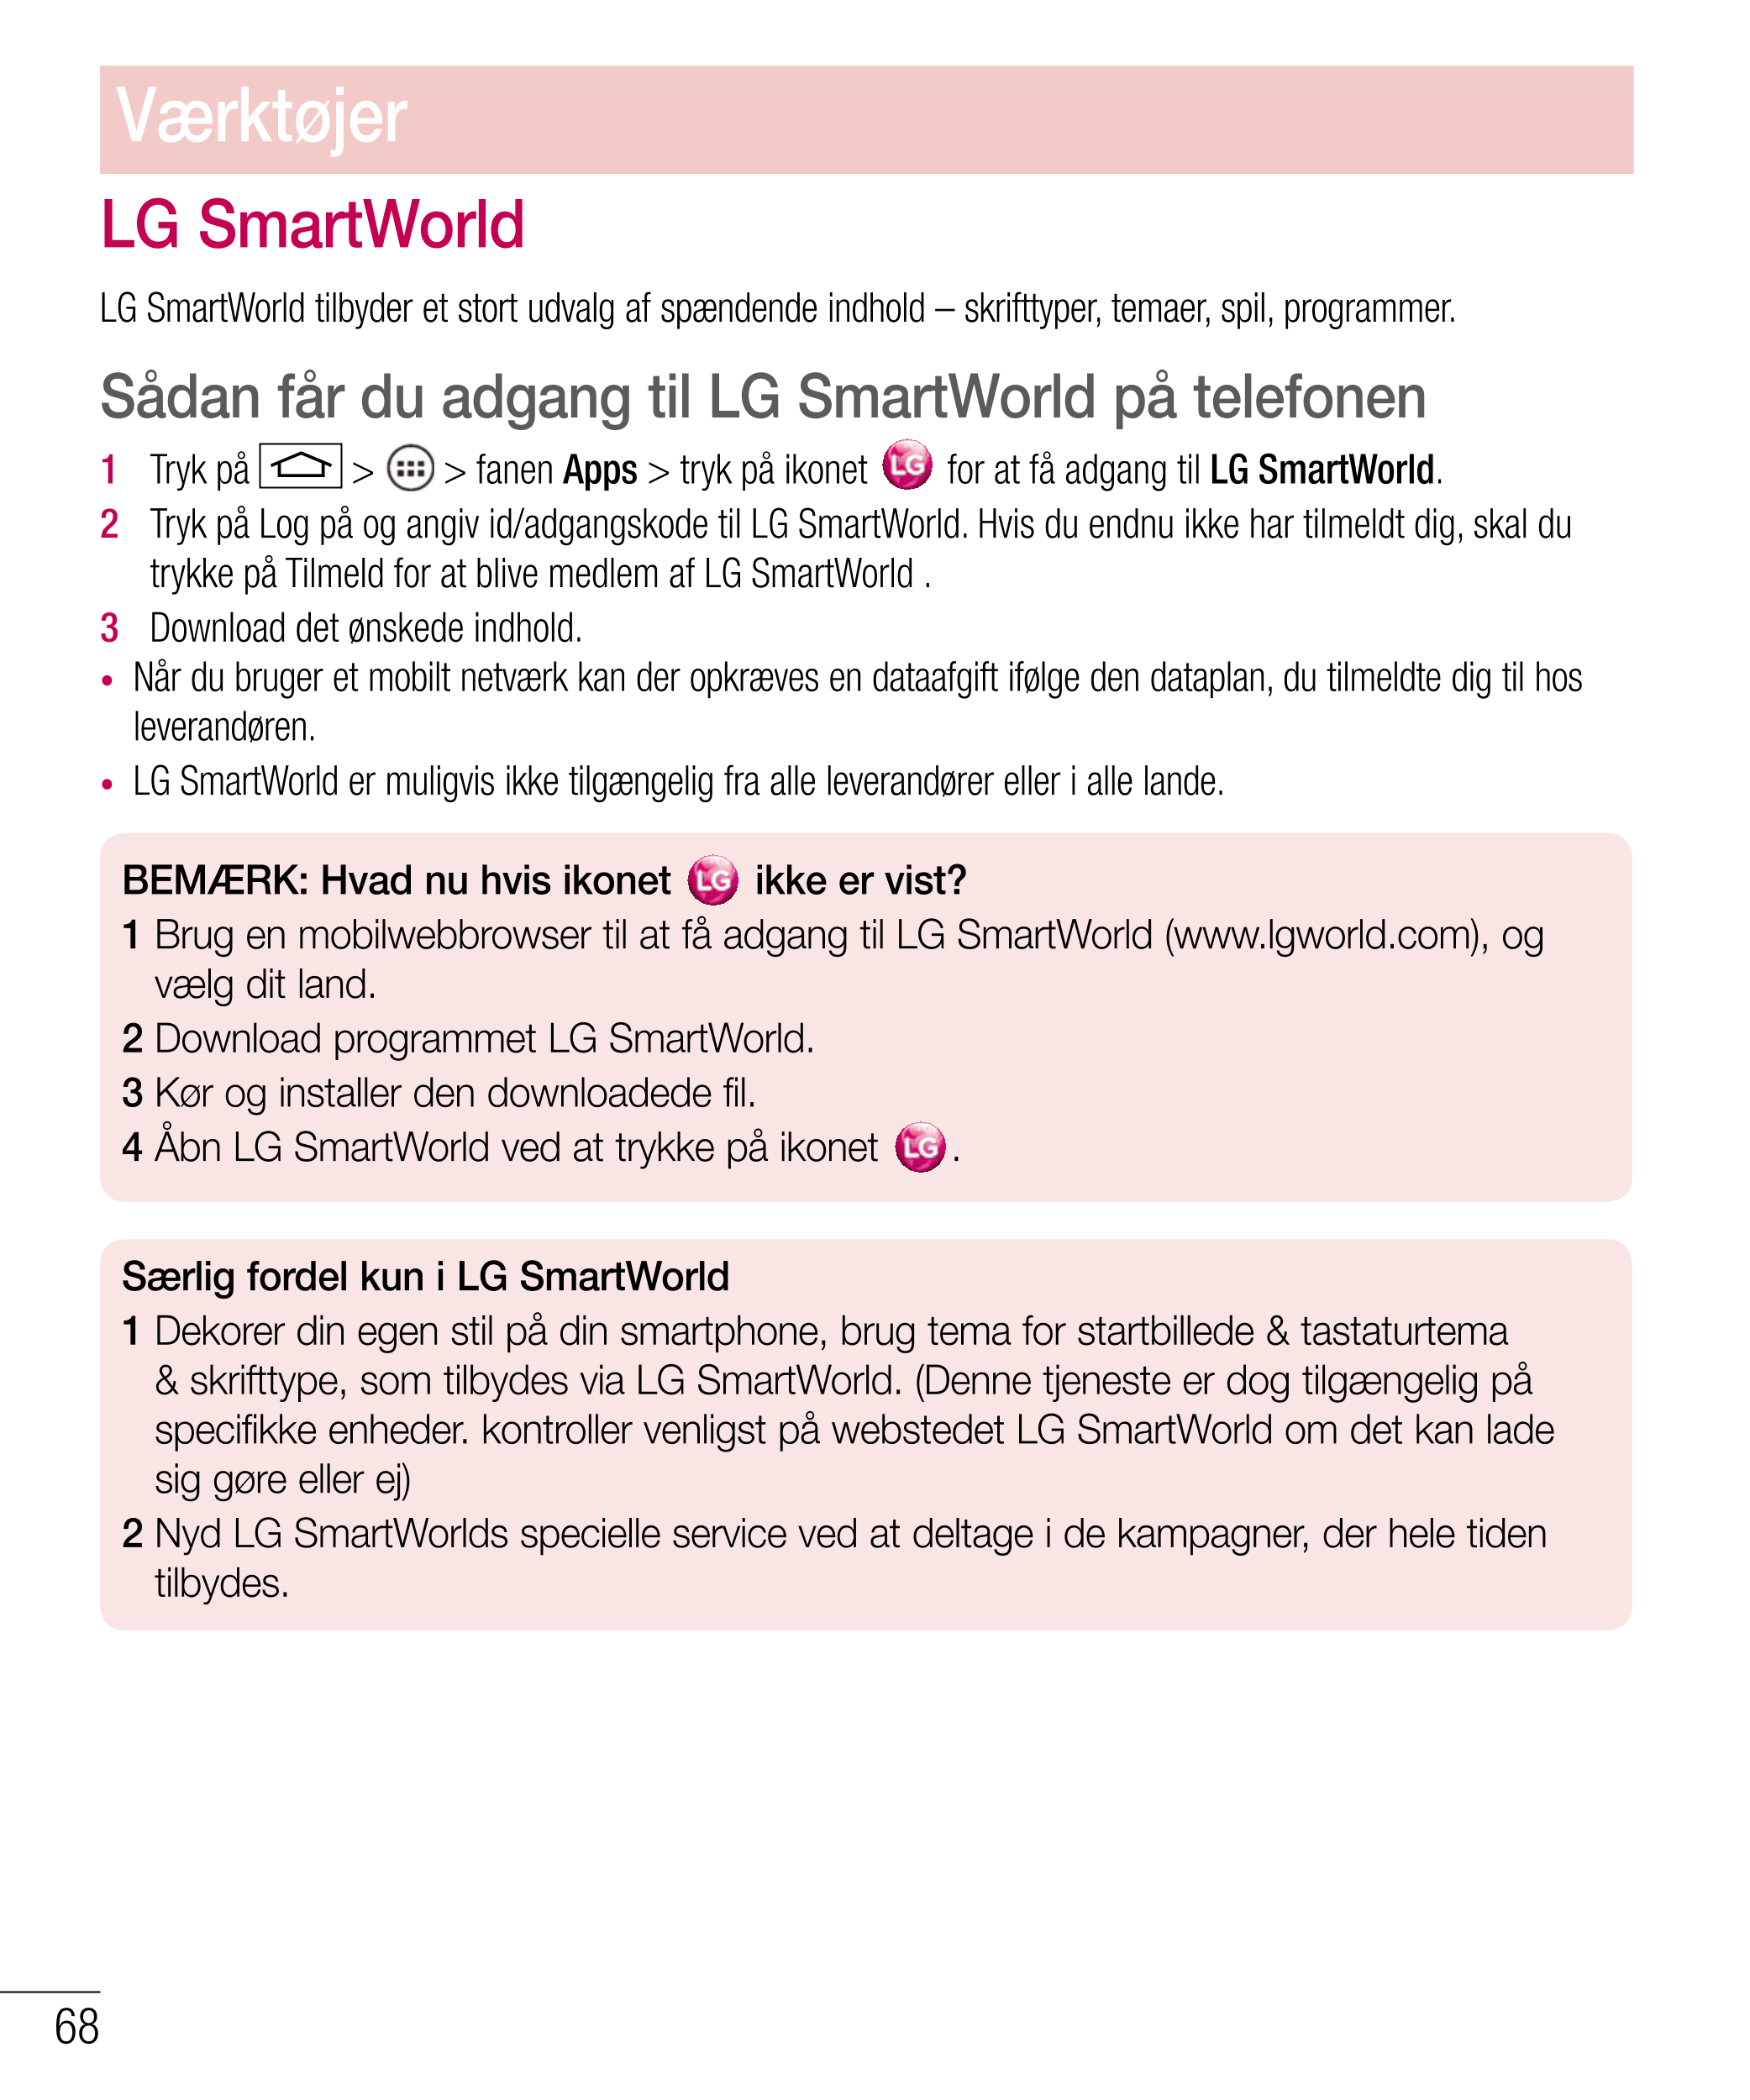 Værktøjer
LG SmartWorld
LG SmartWorld tilbyder et stort udvalg af spændende indhold – skrifttyper, temaer, spil, programmer.
Såd